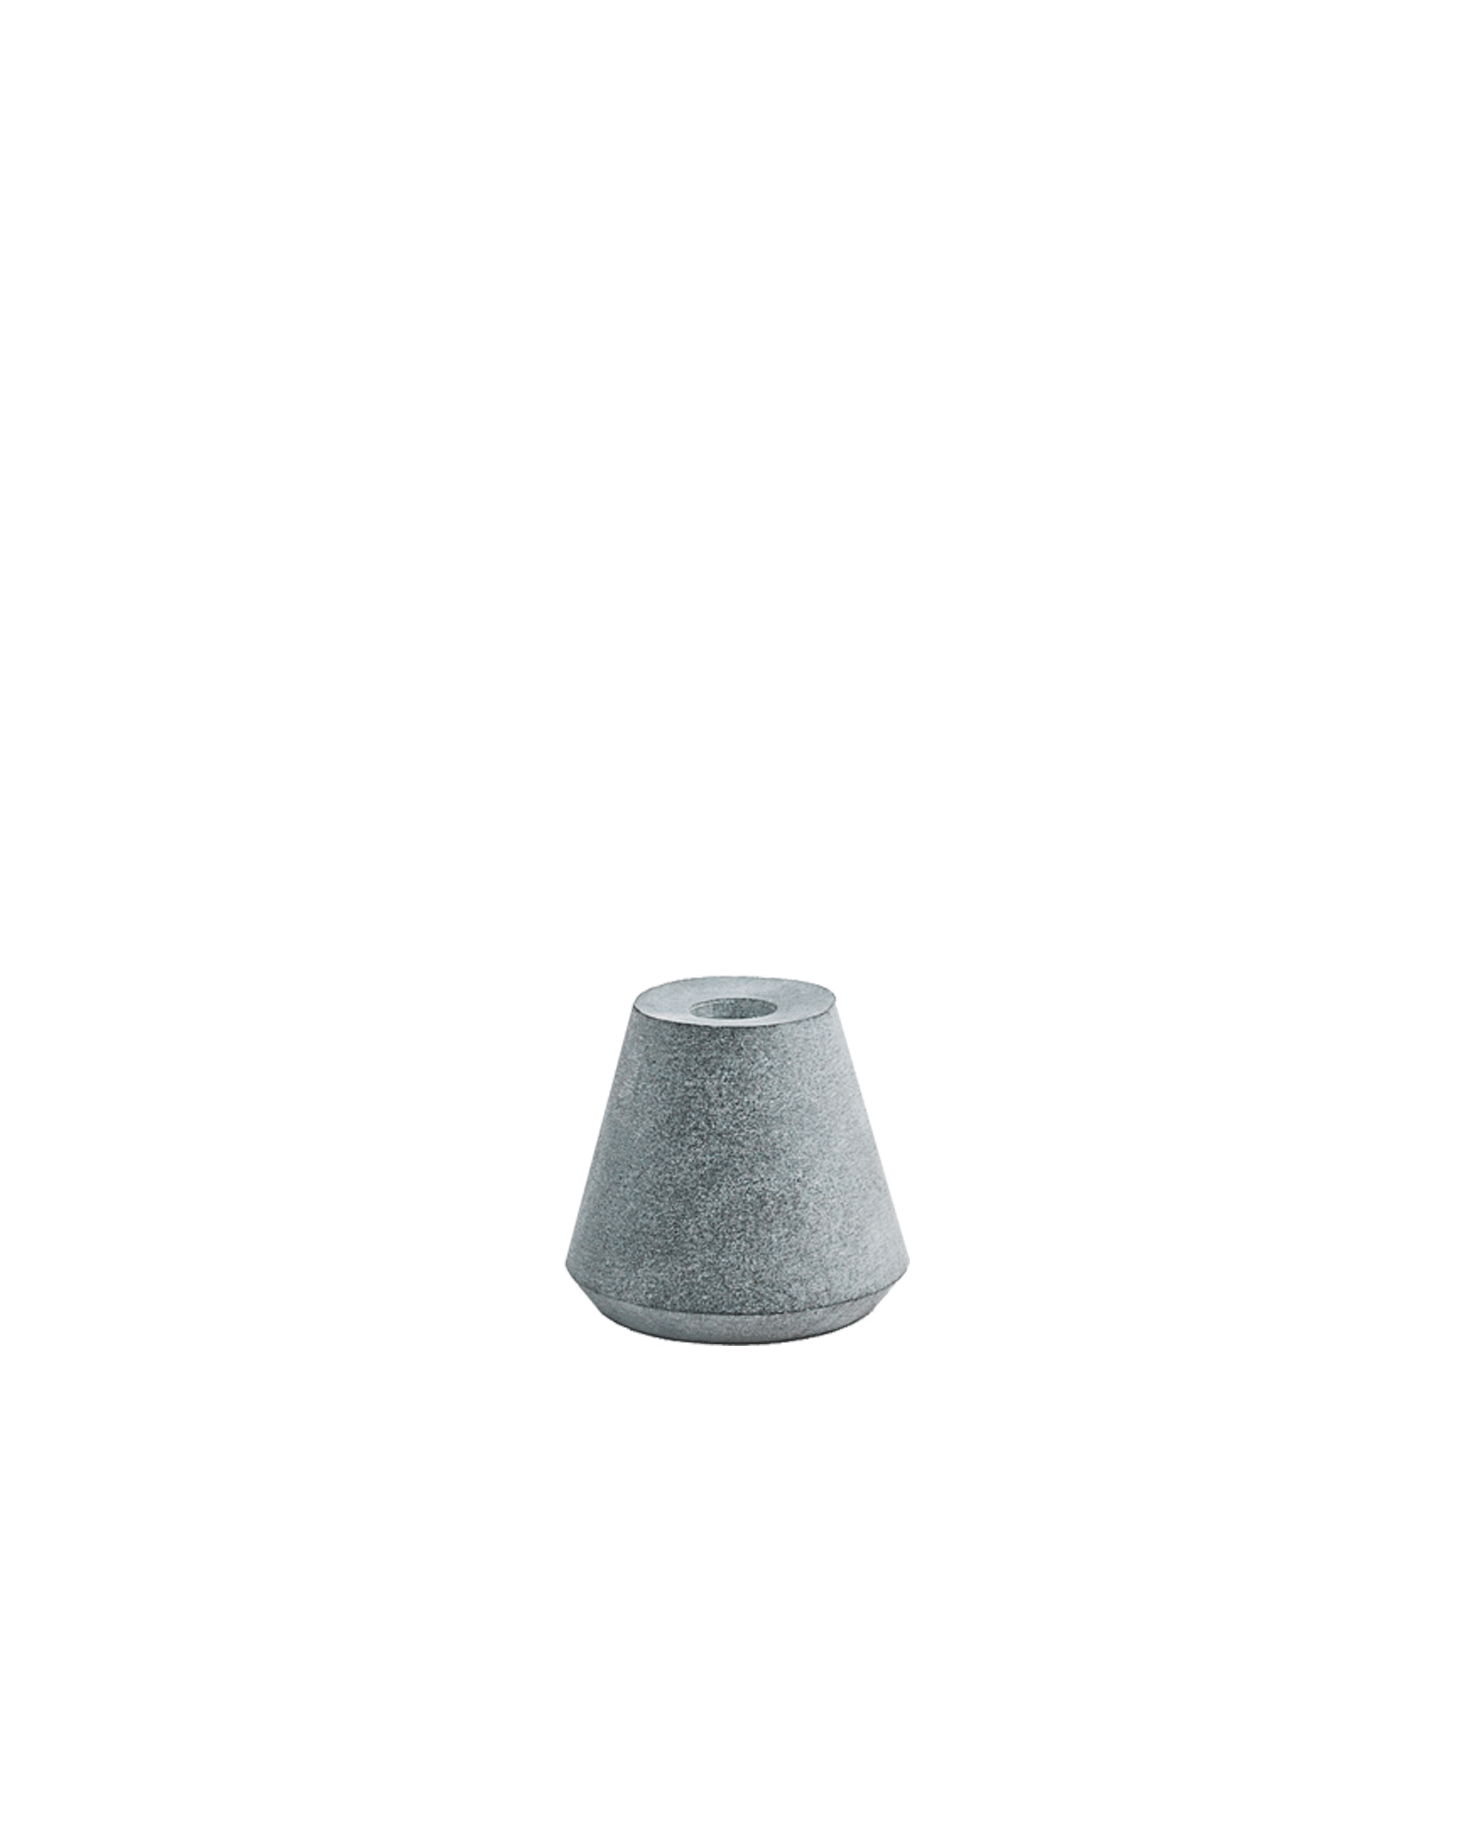 Cone of Stone